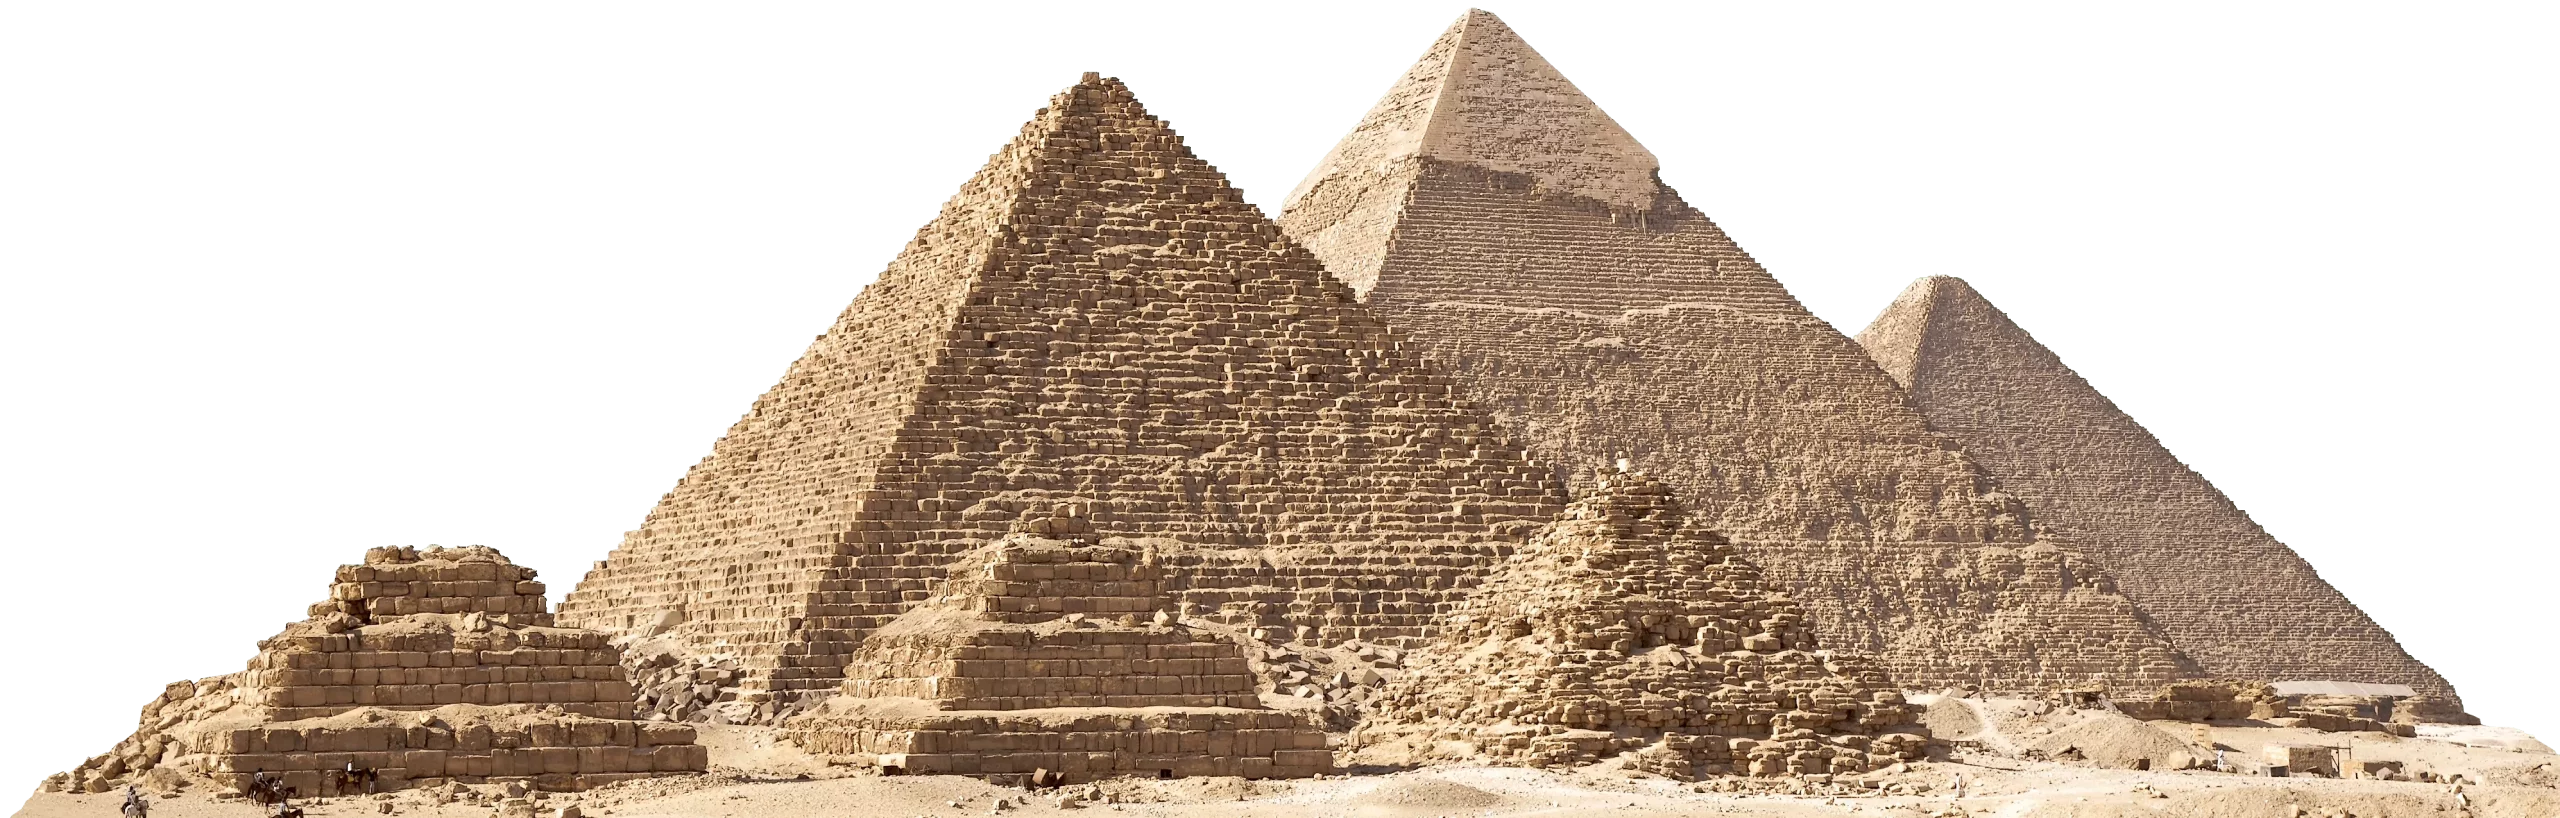 Piramidy w Gizie. Wycieczka do Kairu z Marsa Alam, Sharm i Hurghady.